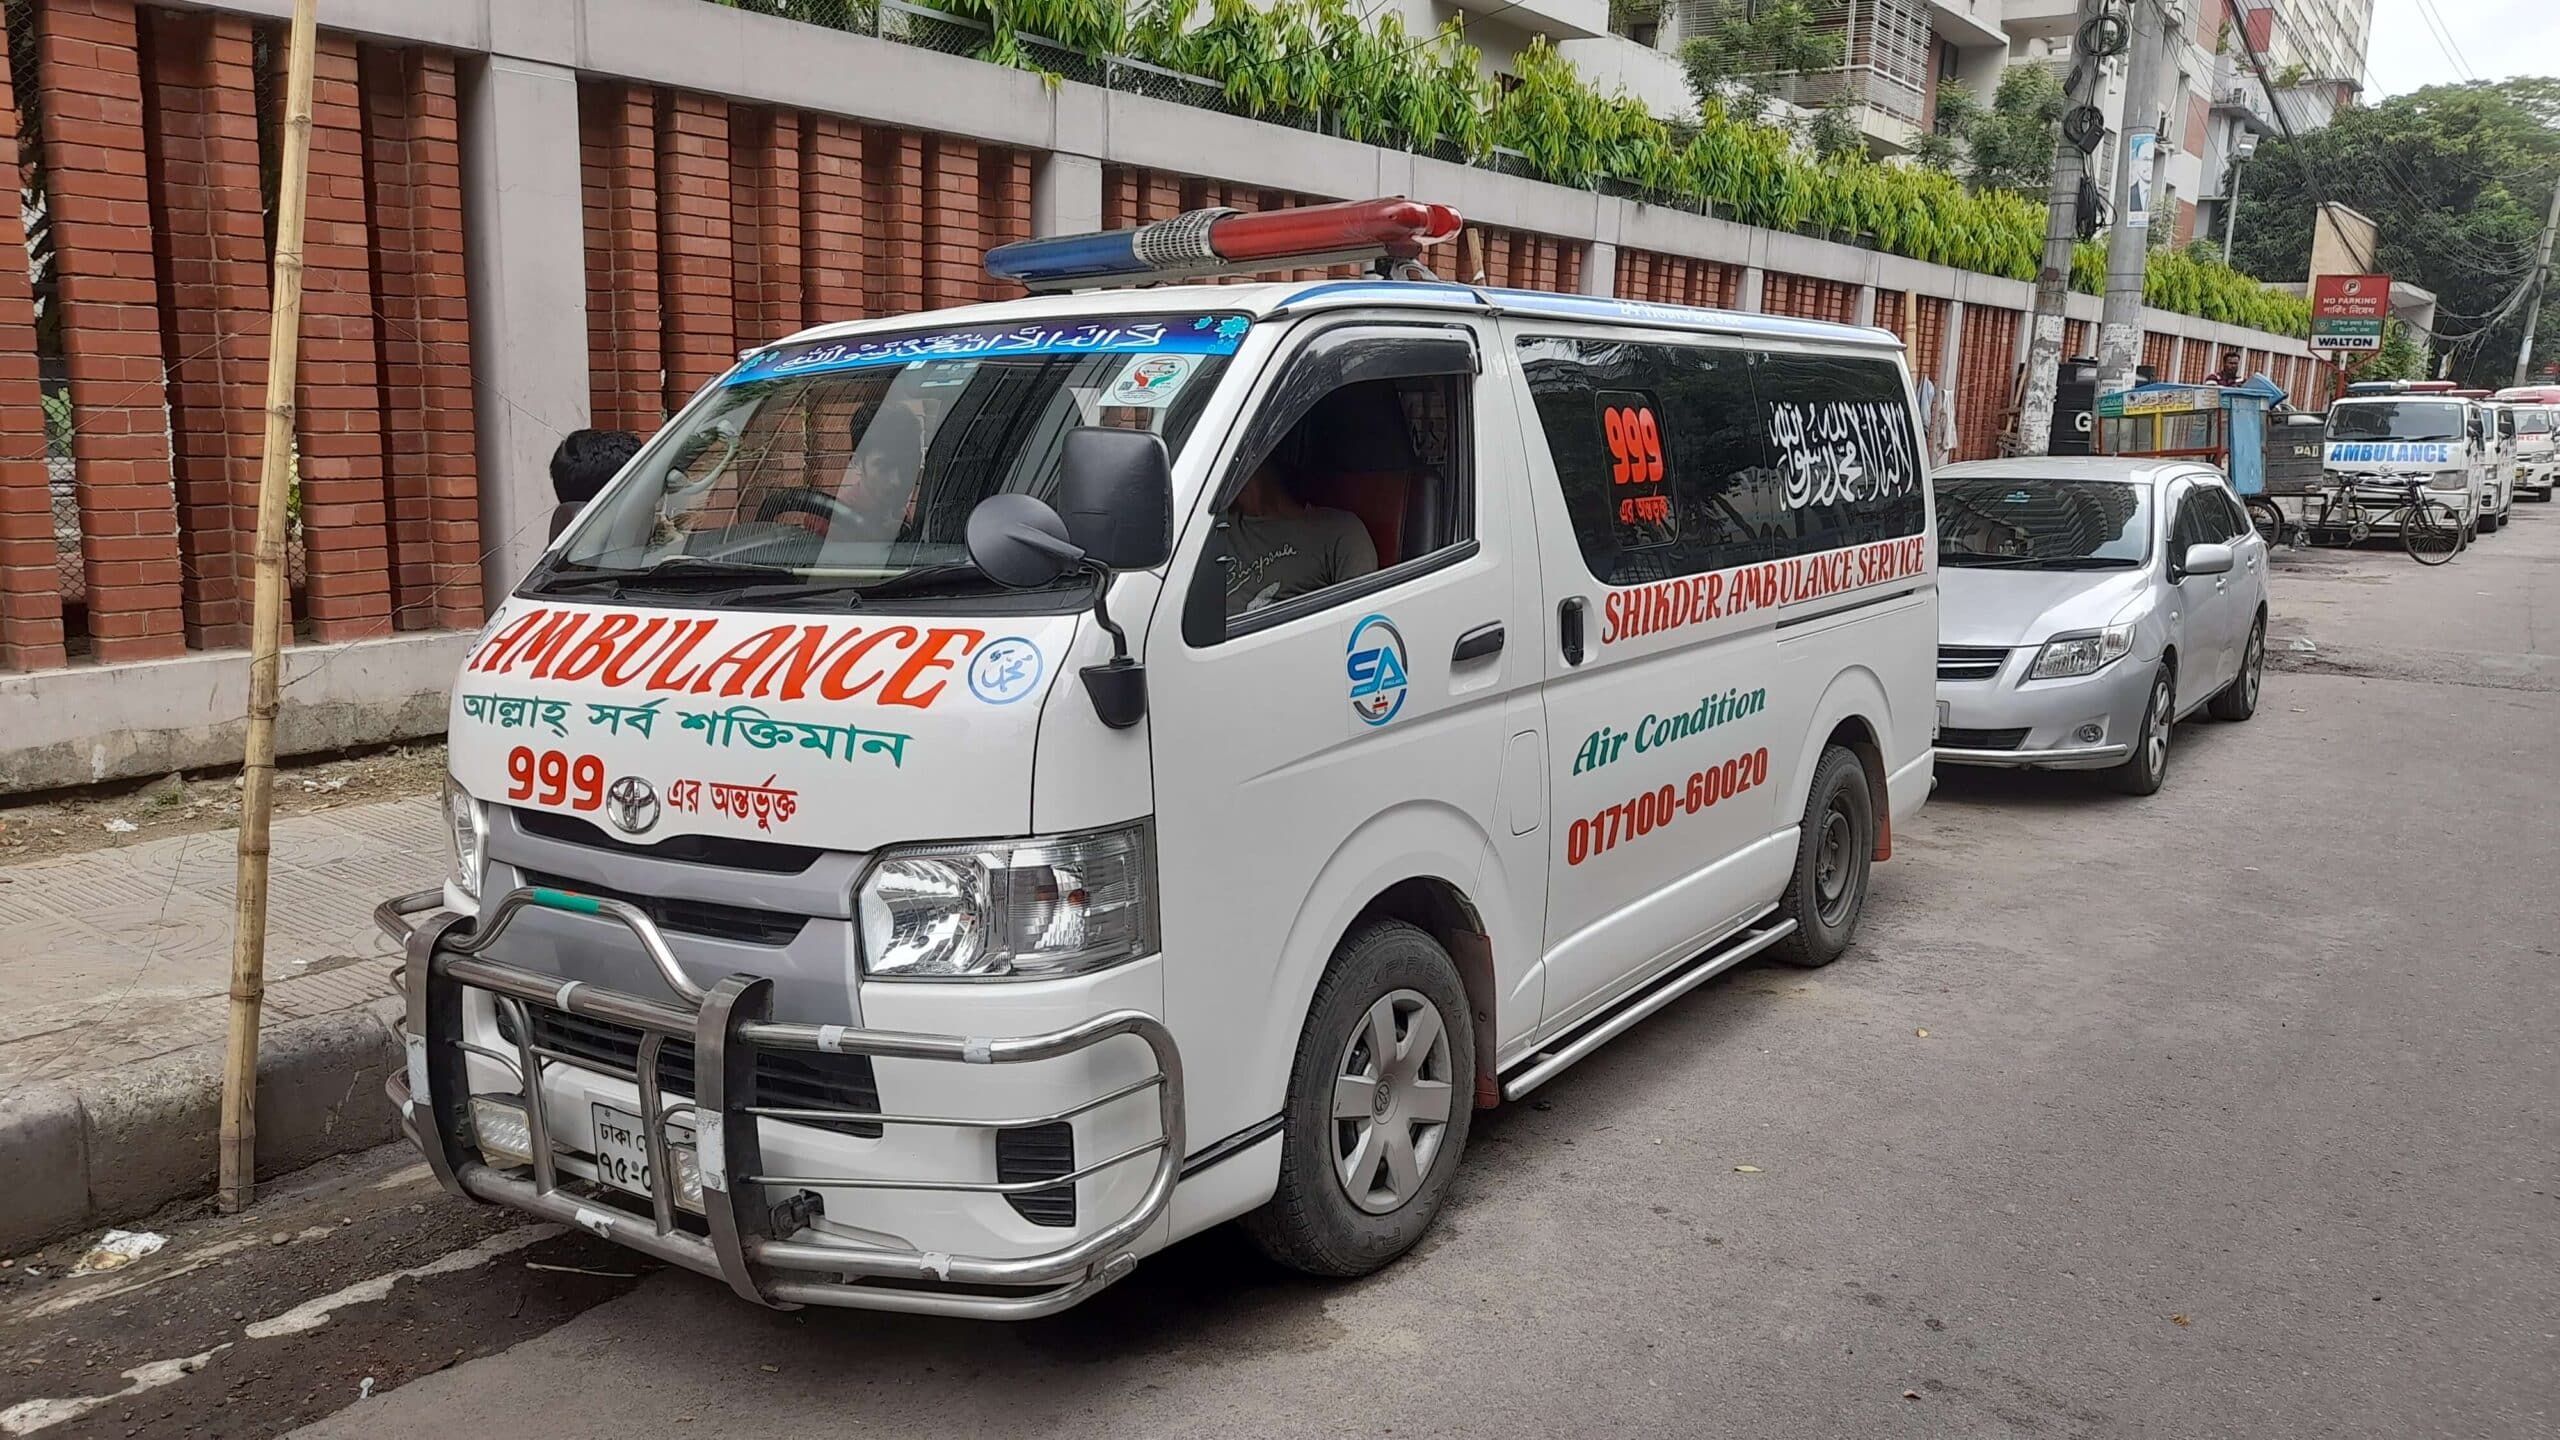 Ac Ambulance service in Dhaka